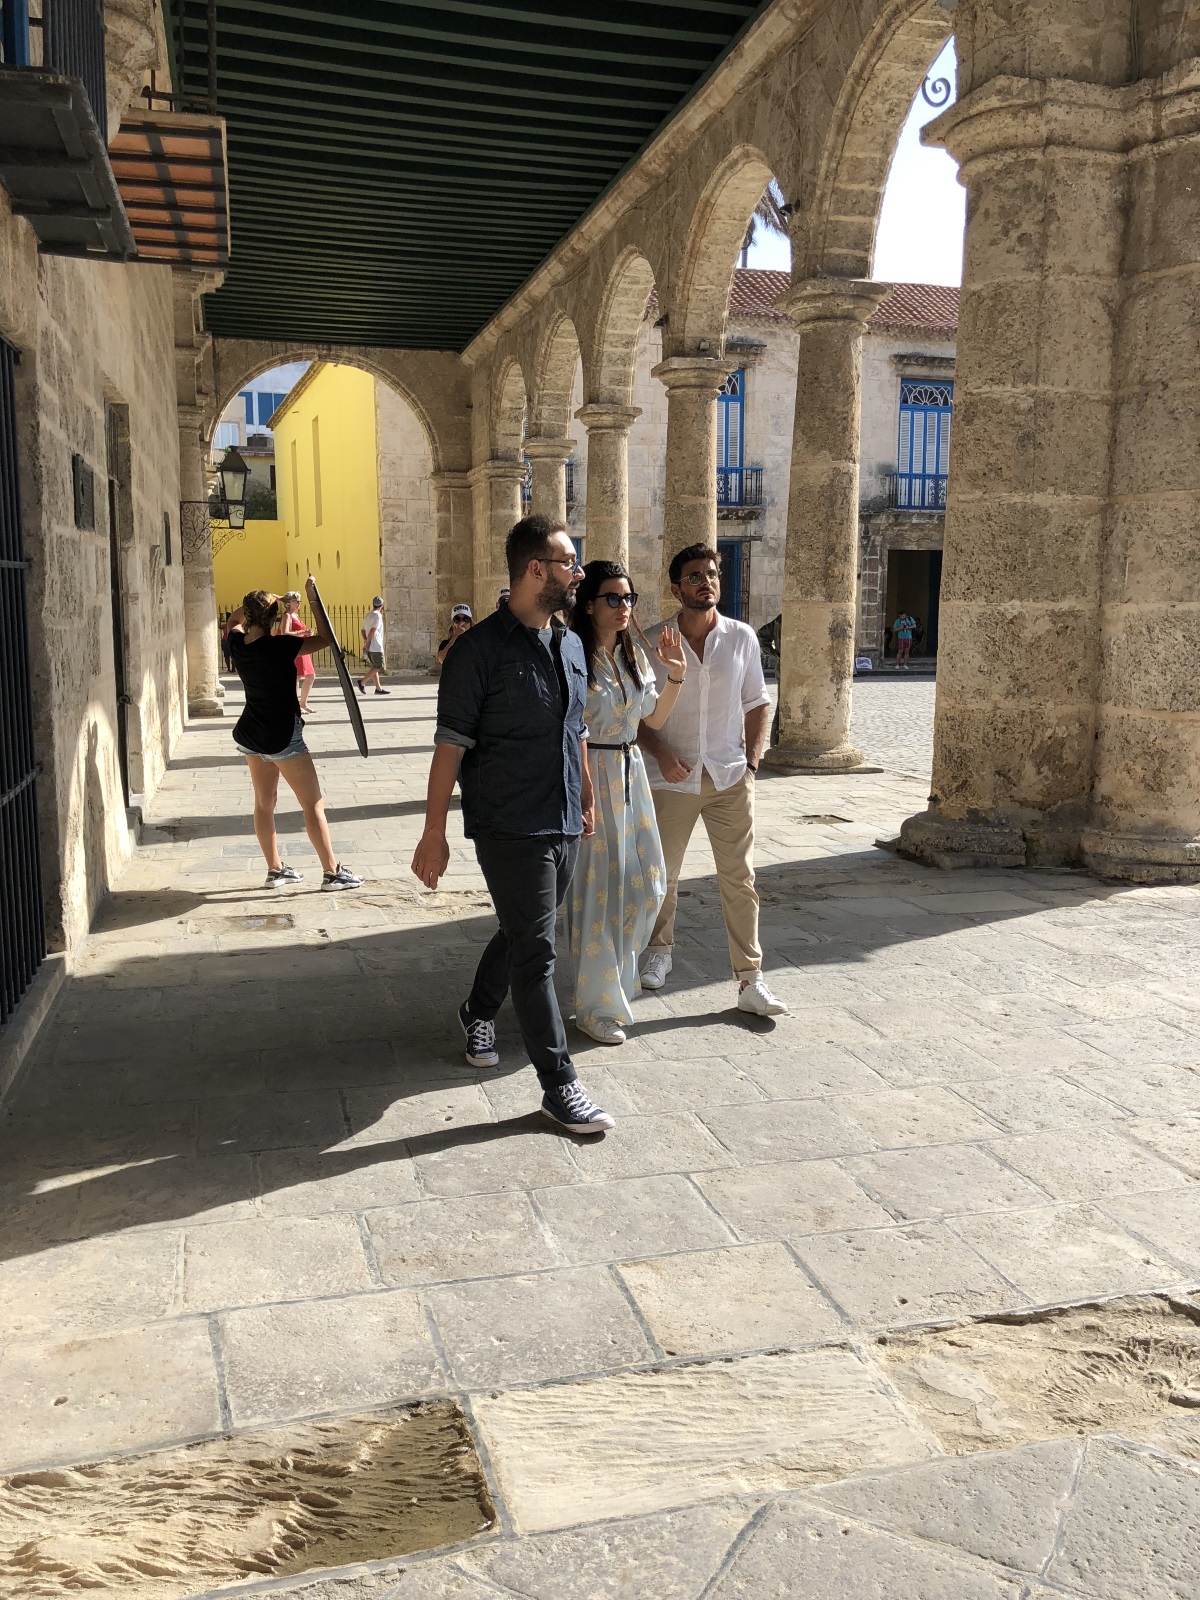 Κωστής Μαραβέγιας και Τόνια Σωτηροπούλου γνωρίζουν την Κούβα με ξεναγό το Νίκο Κοκλώνη